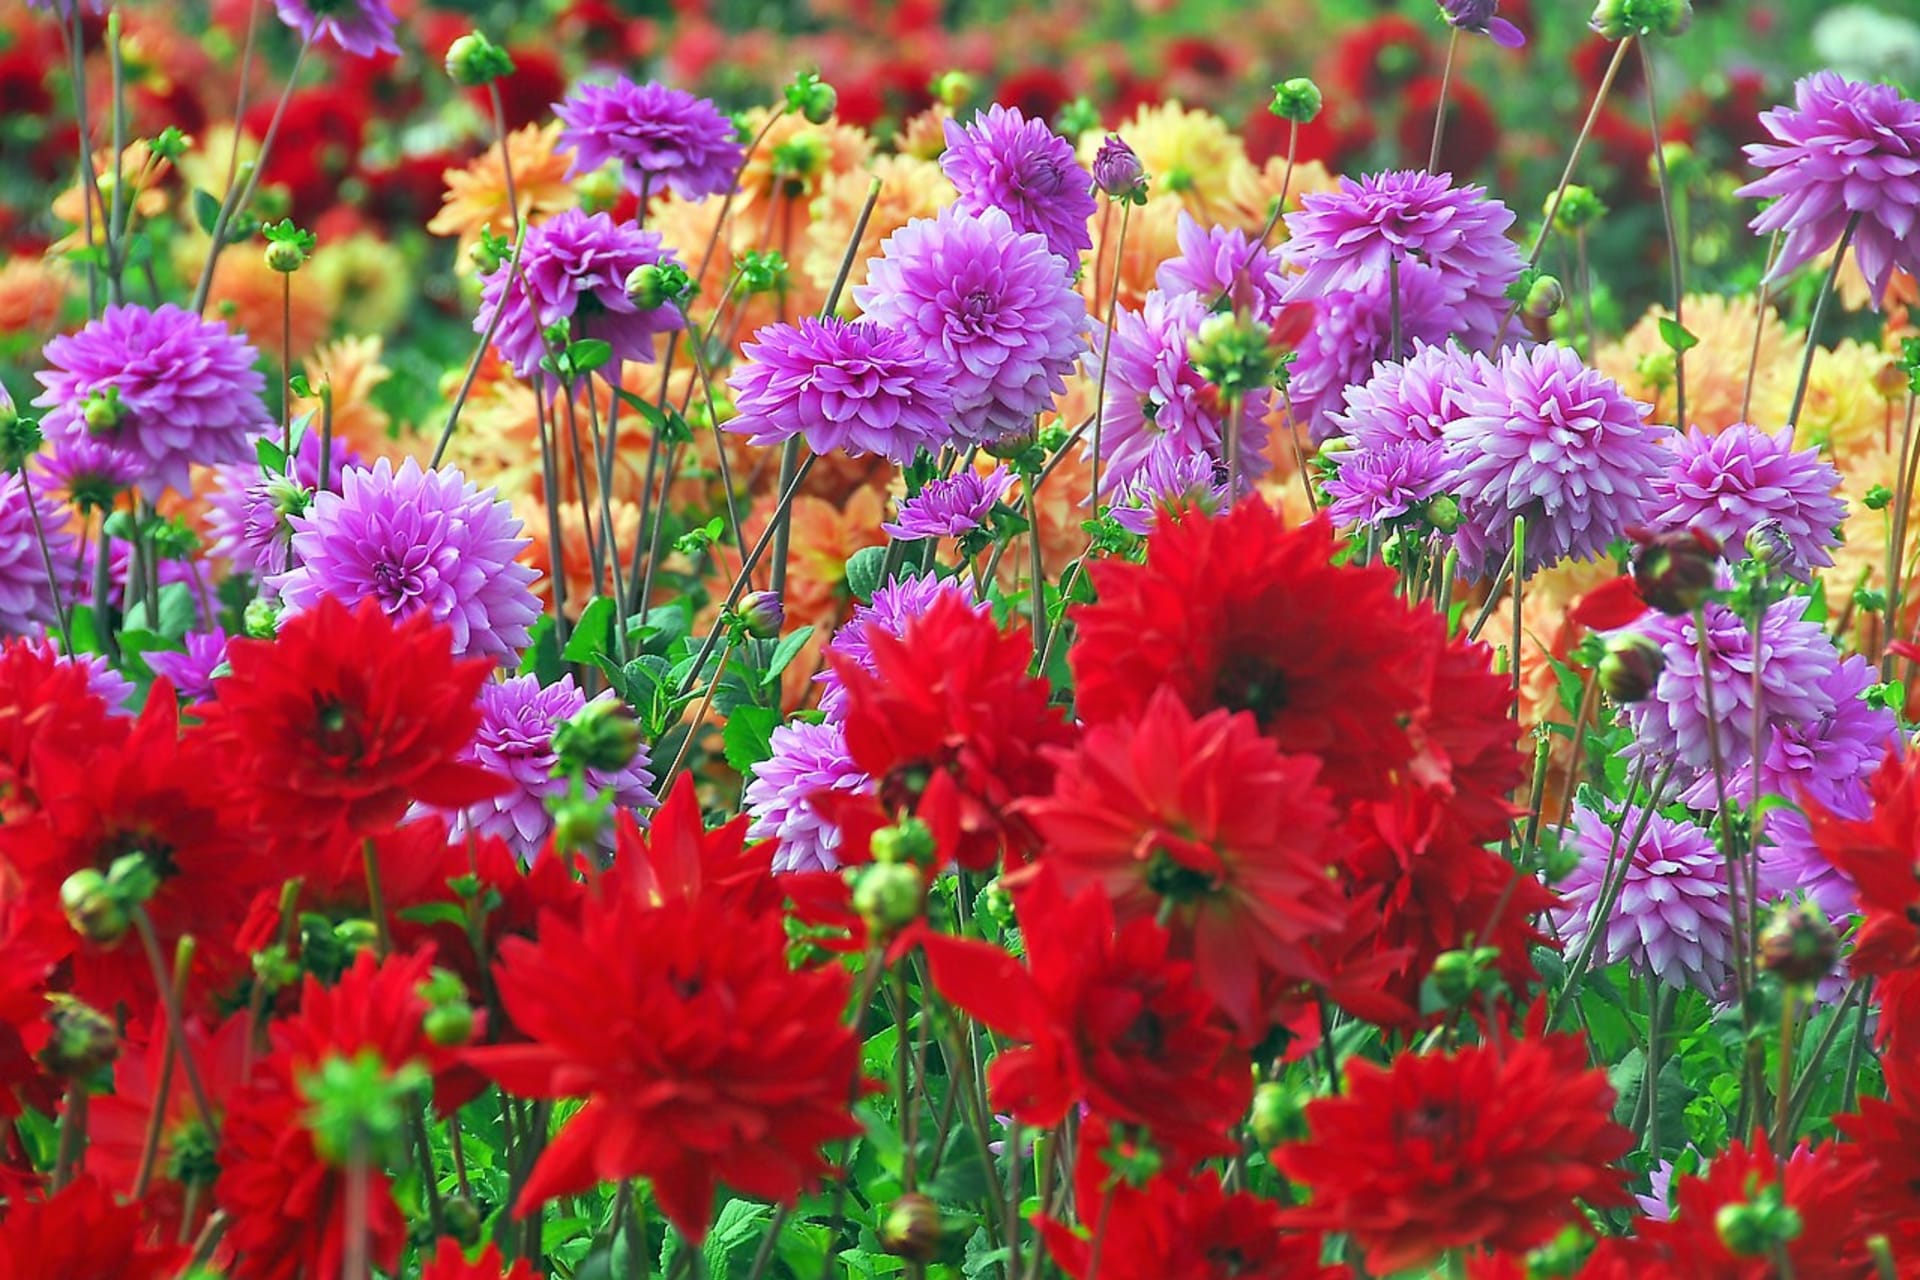 Šest nejkrásnějších letních cibulovin: Jiřinky (Dahlia) jsou okouzlující květiny, existují desítky tisíc kultivarů, jeden krásnější než druhý. Vybírat můžete z množství barev a výjimečných barevných kombinací.